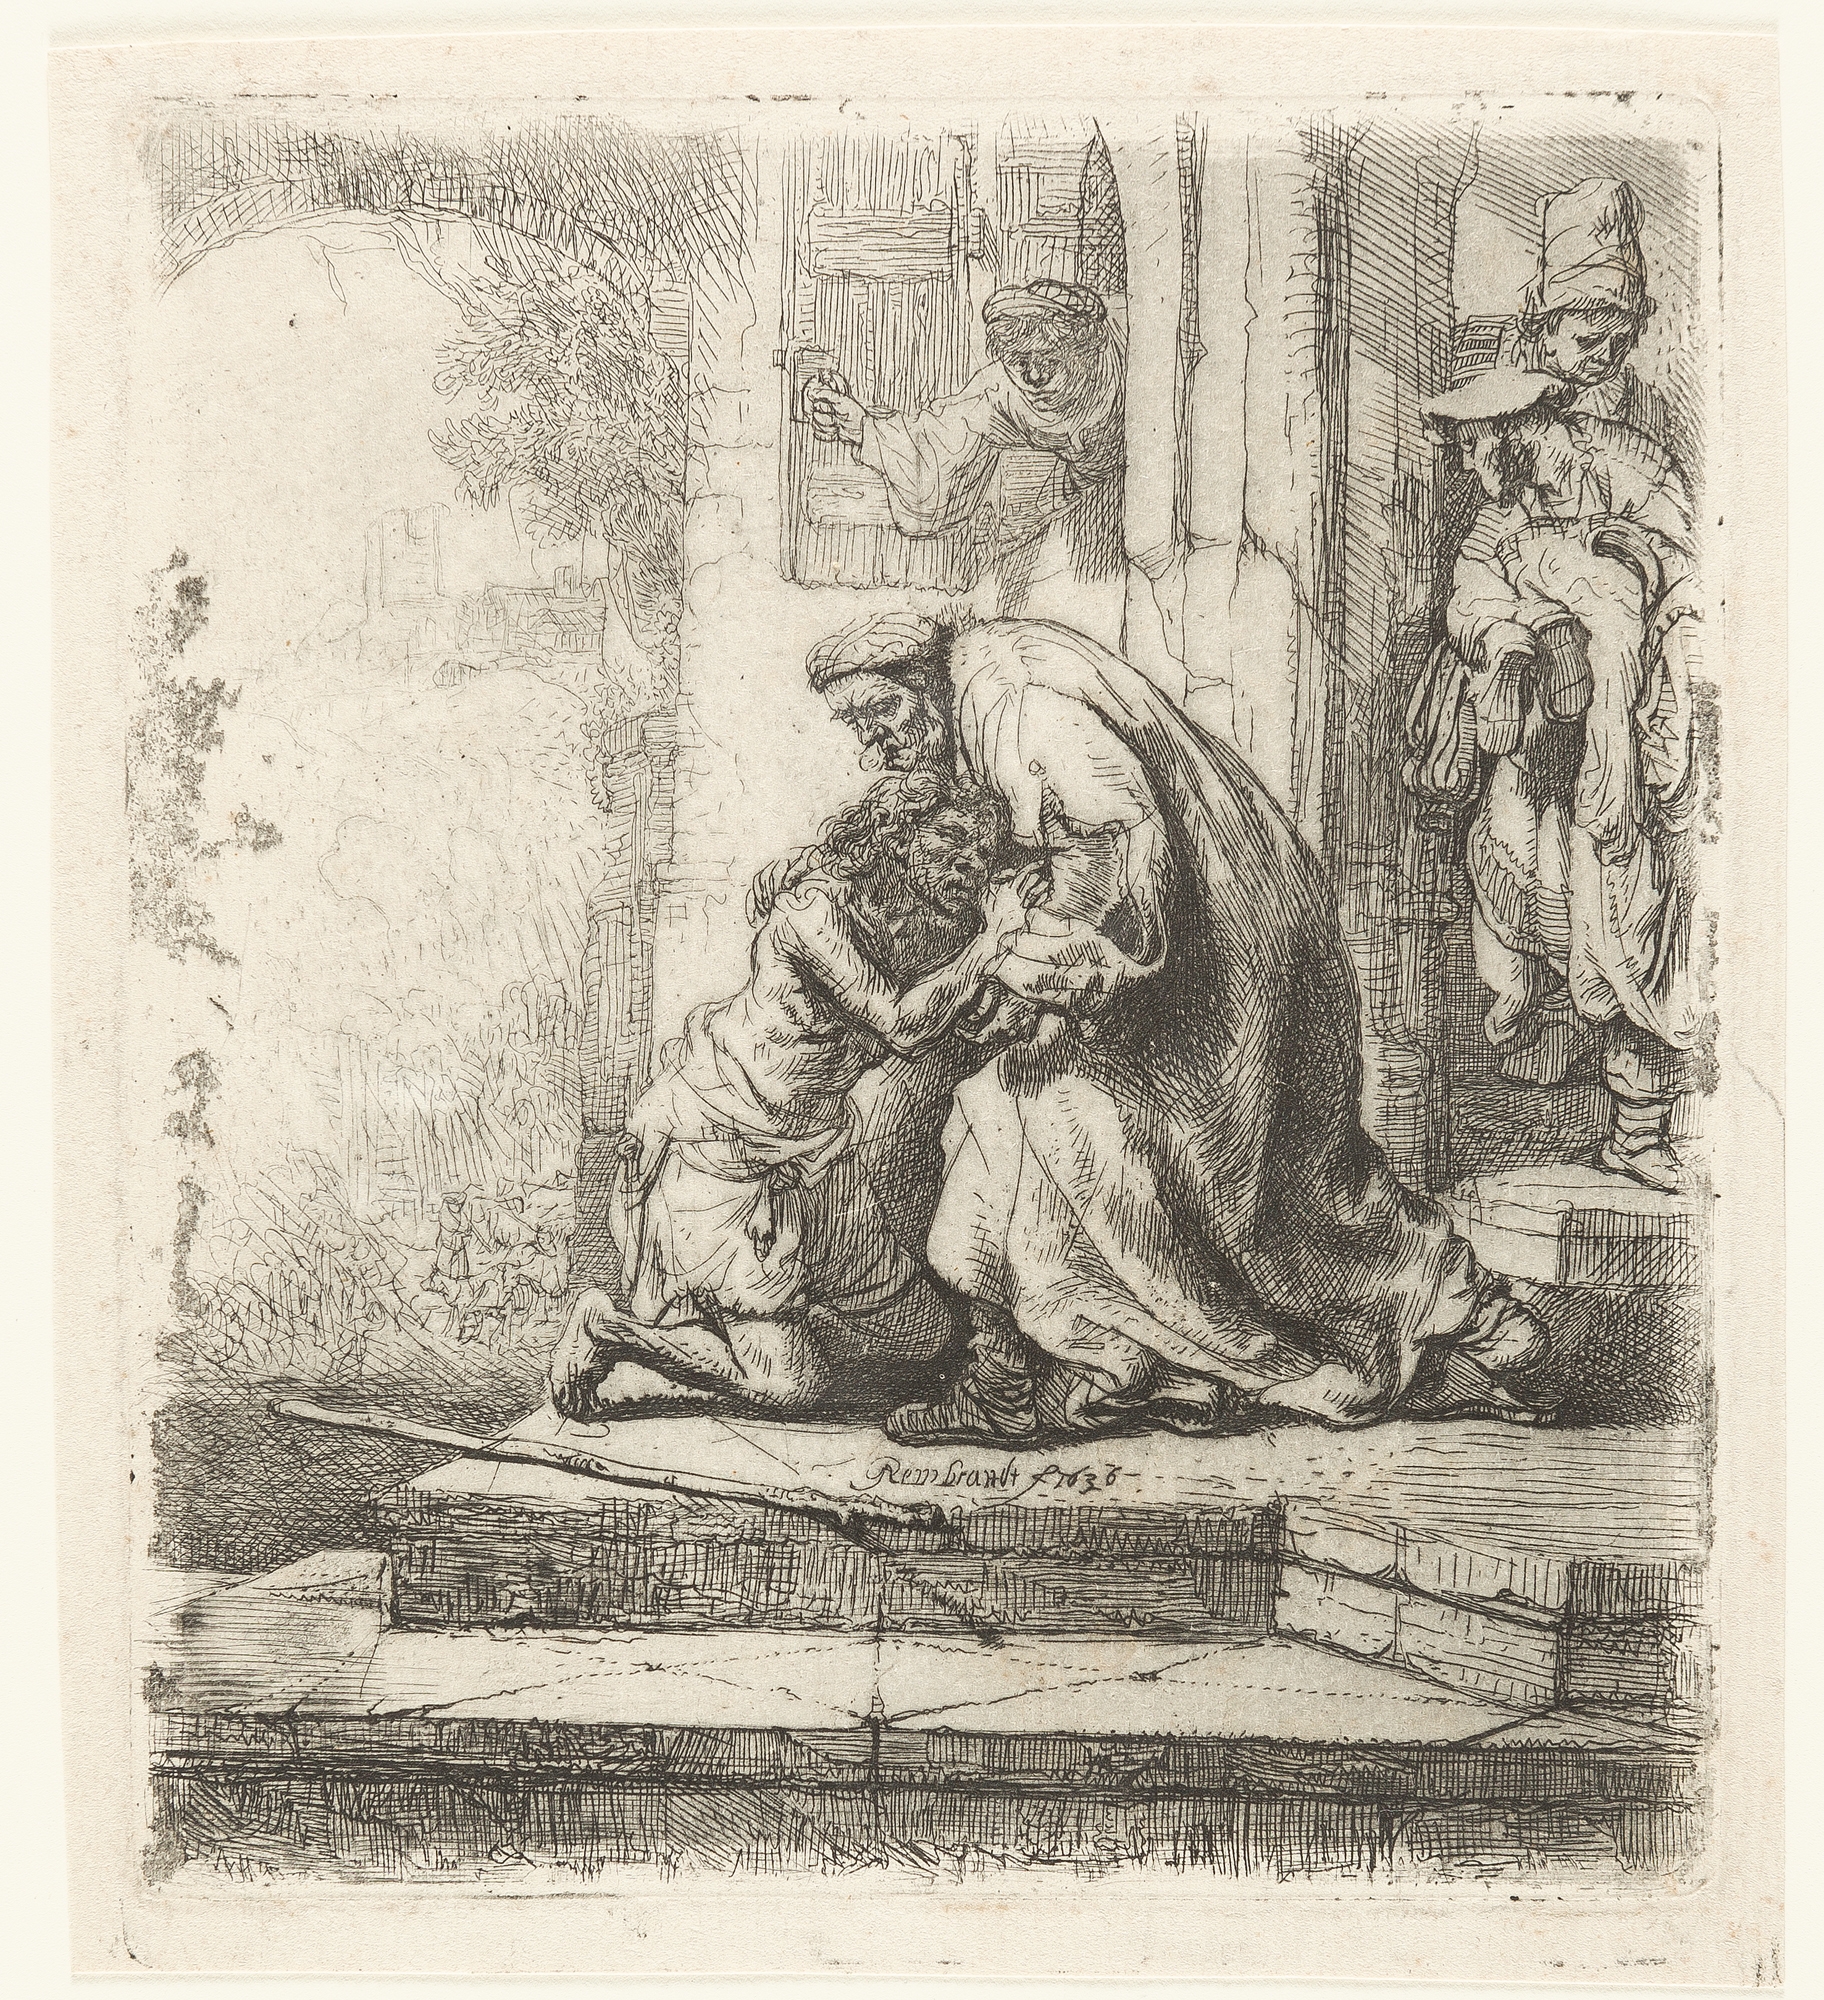 Der verlorene Sohn by Rembrandt van Rijn, 1636